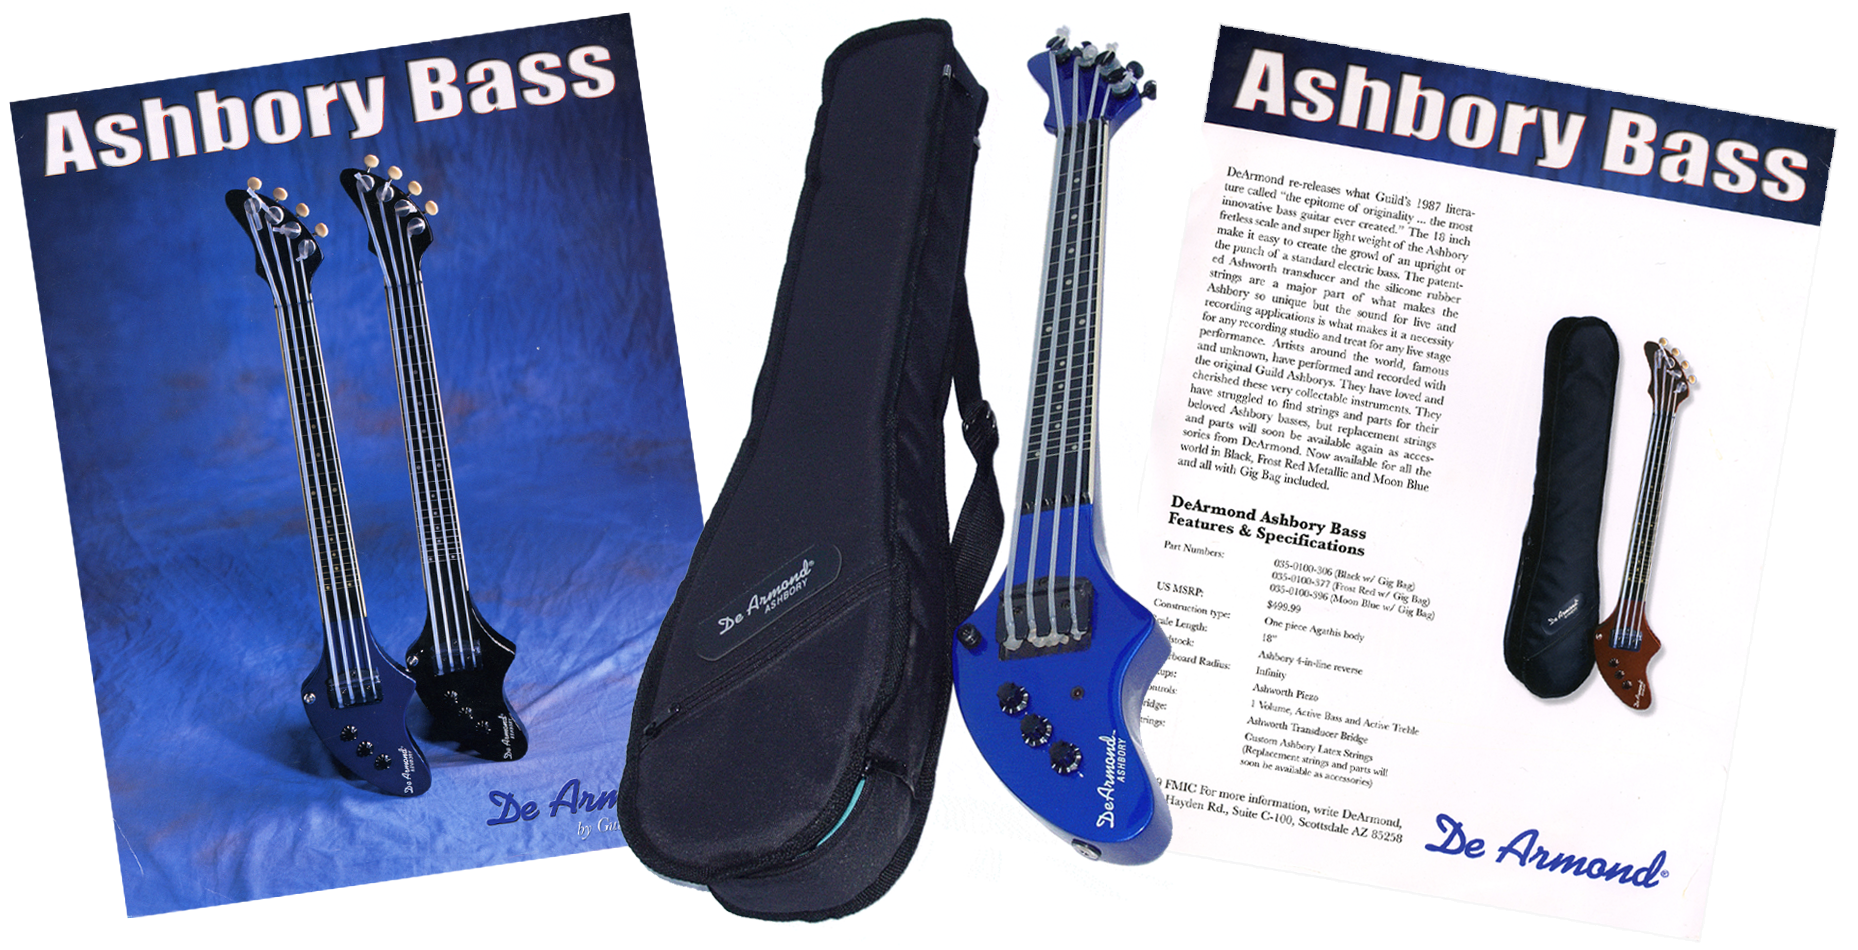 Bass Centre Ashbory Bass